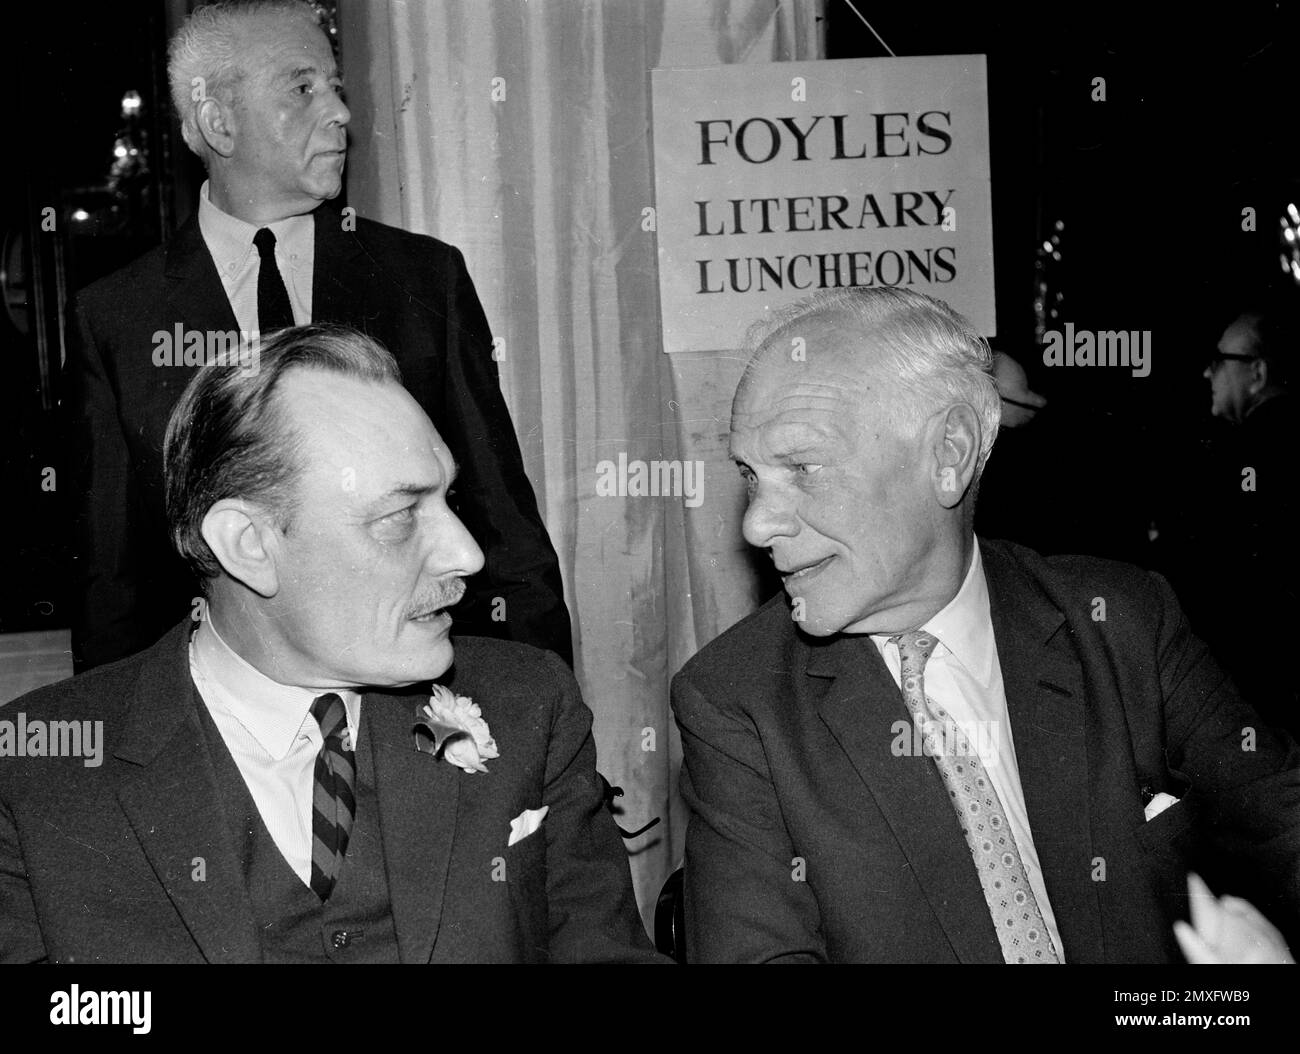 El político británico Enoch Powell y el periodista Malcolm Muggeridge en el almuerzo literario de Foyles en Londres 1969 Foto de stock